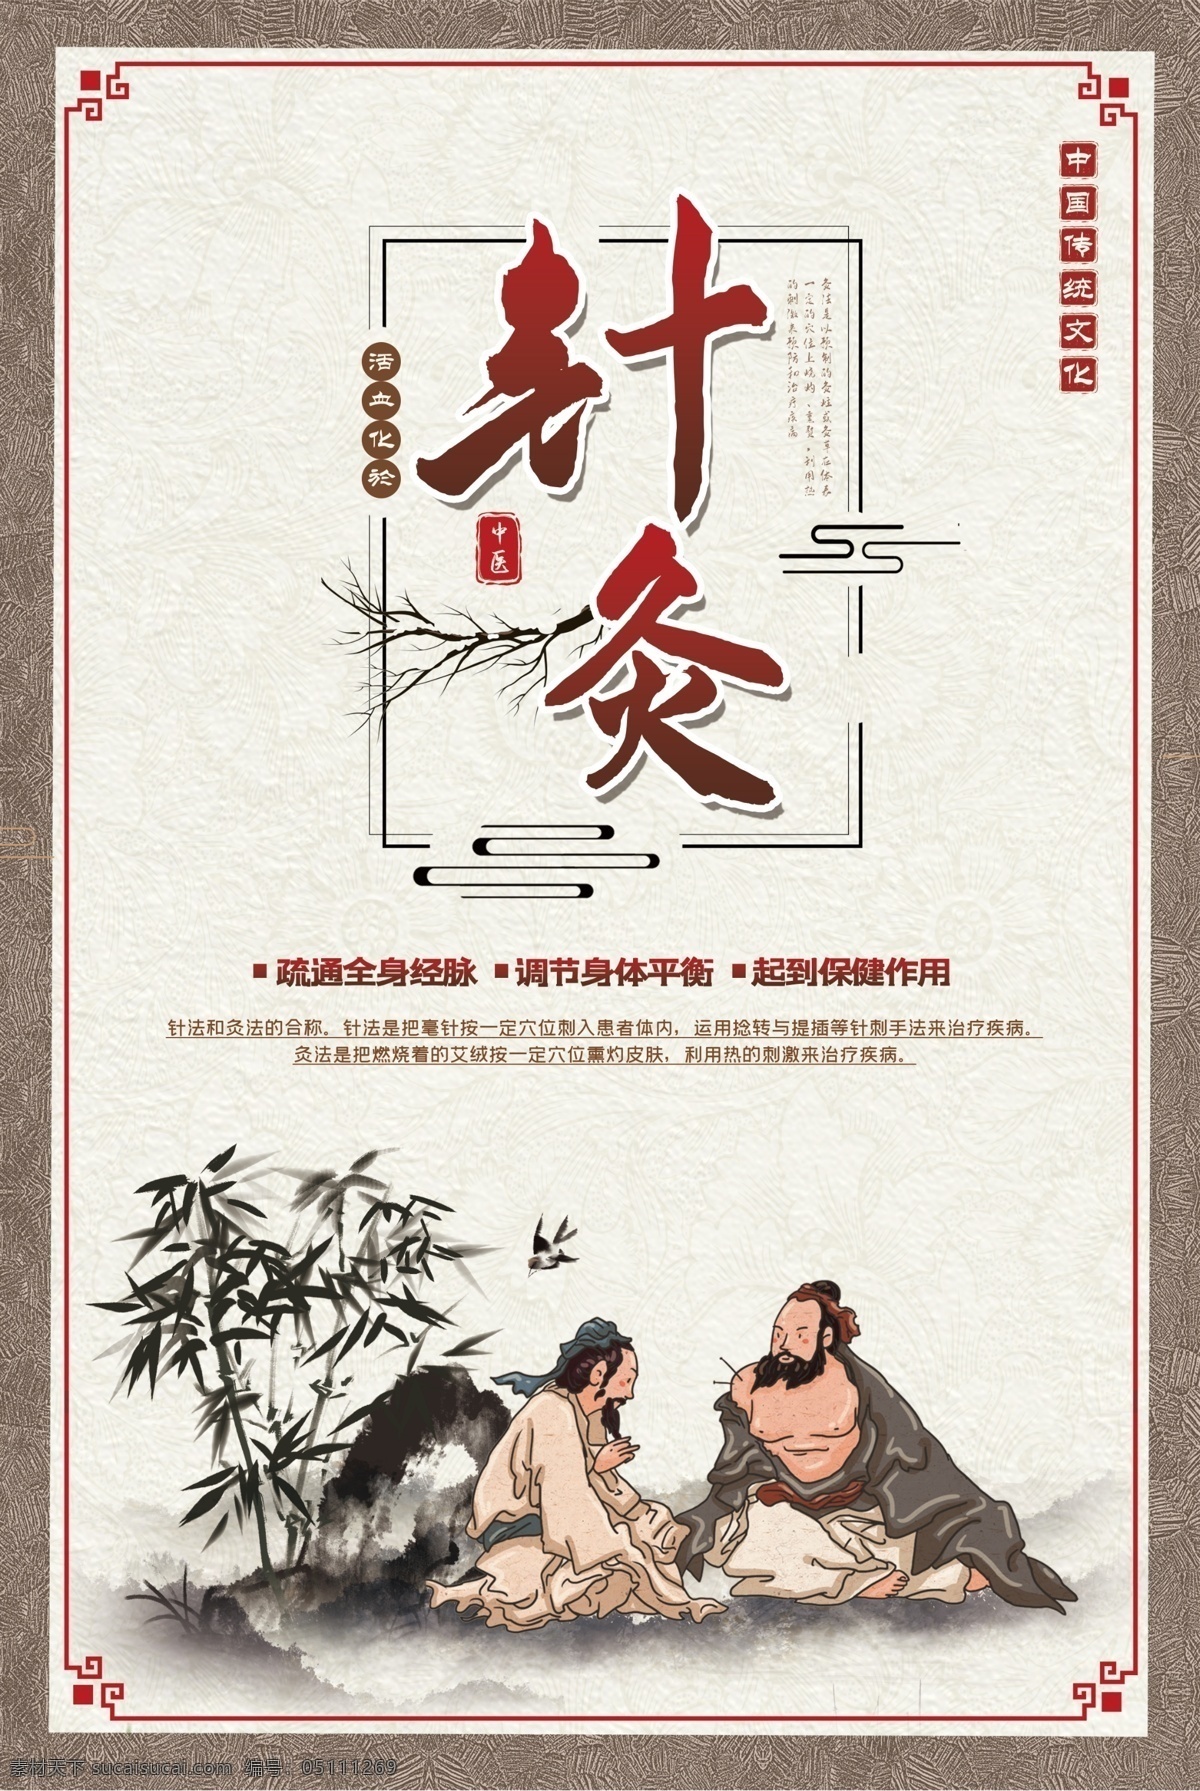 针灸 传统 中医 活动 宣传海报 宣传 海报